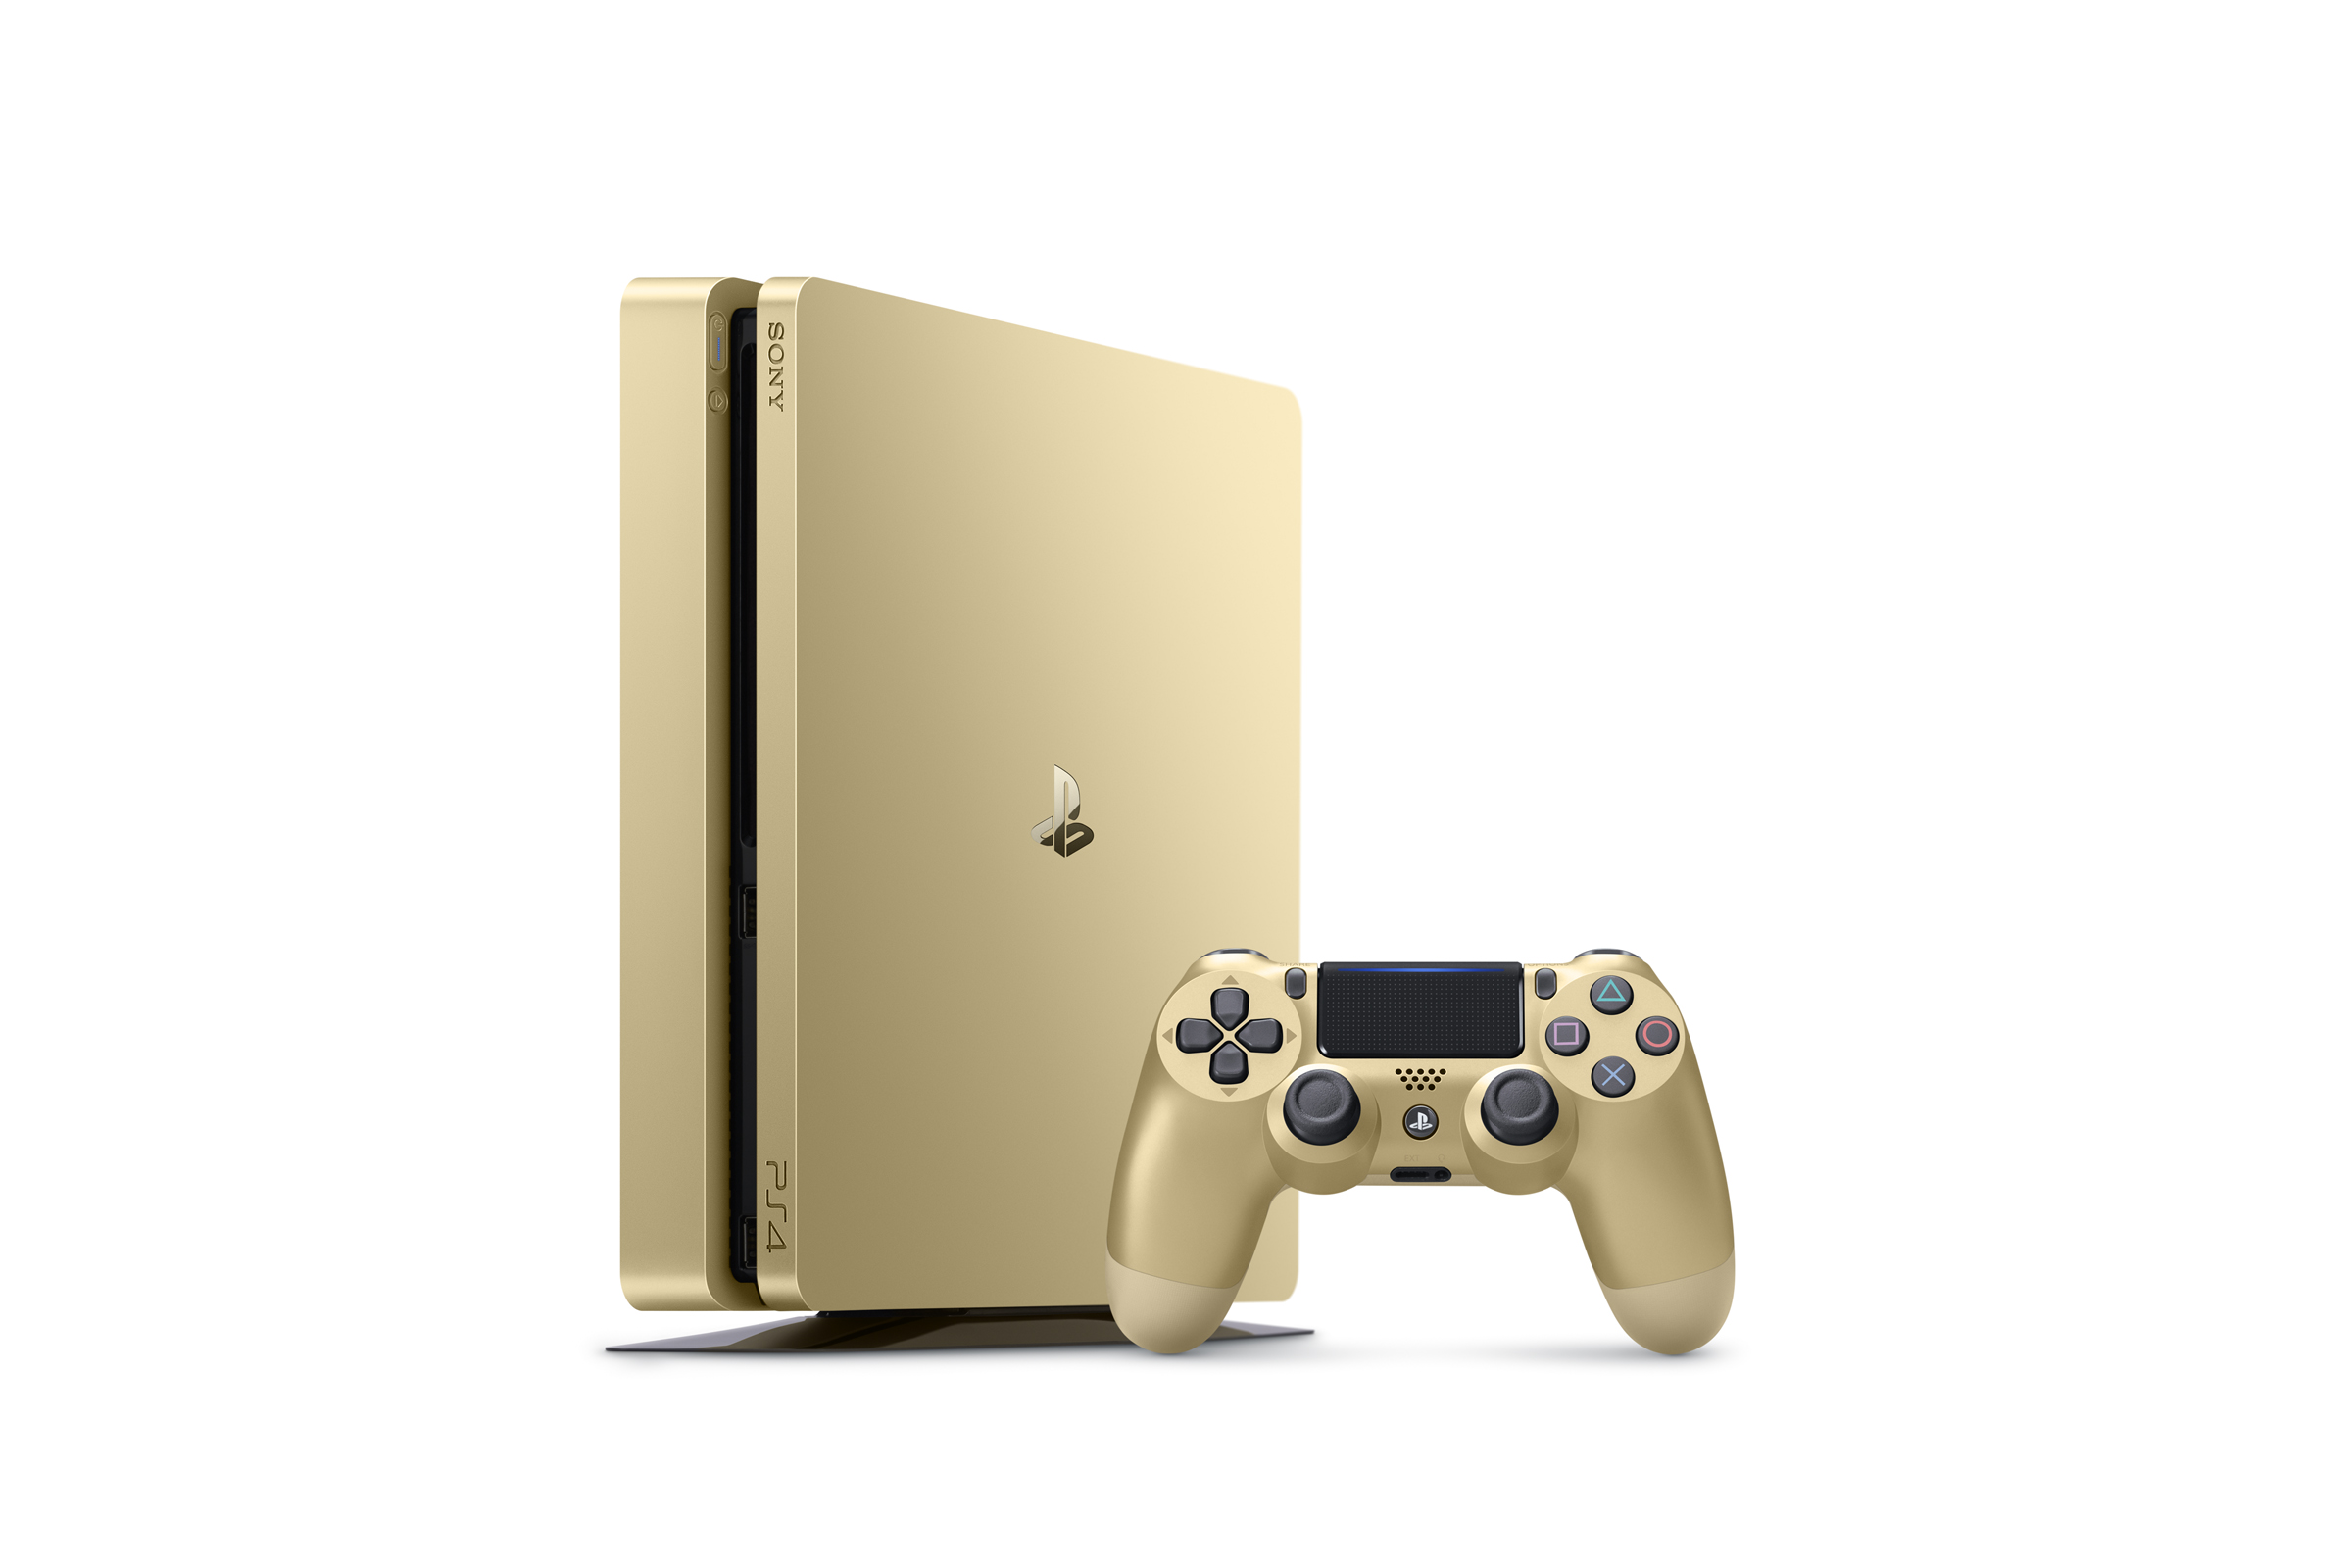 La Playstation 4 Slim Gold et Silver annoncée (1)